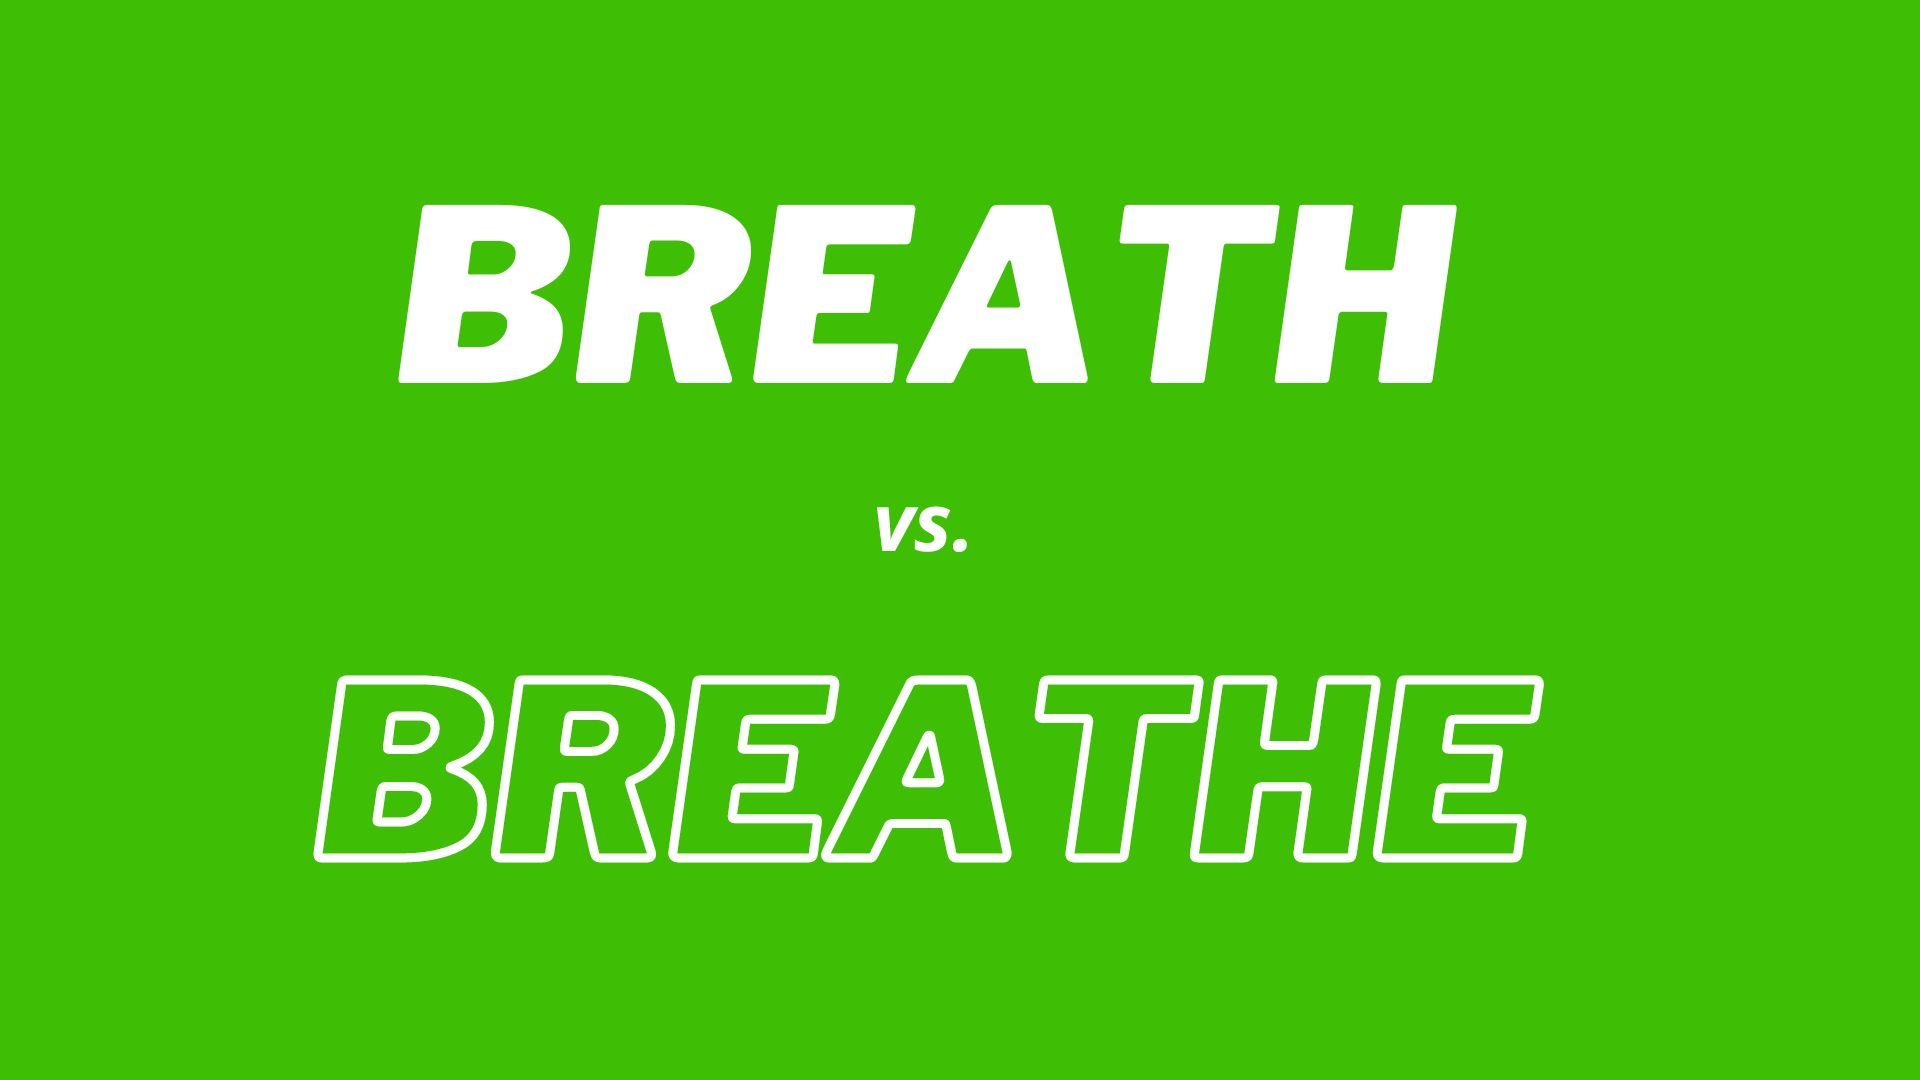 Comparação visual e definições das palavras "Breath" e "Breathe".